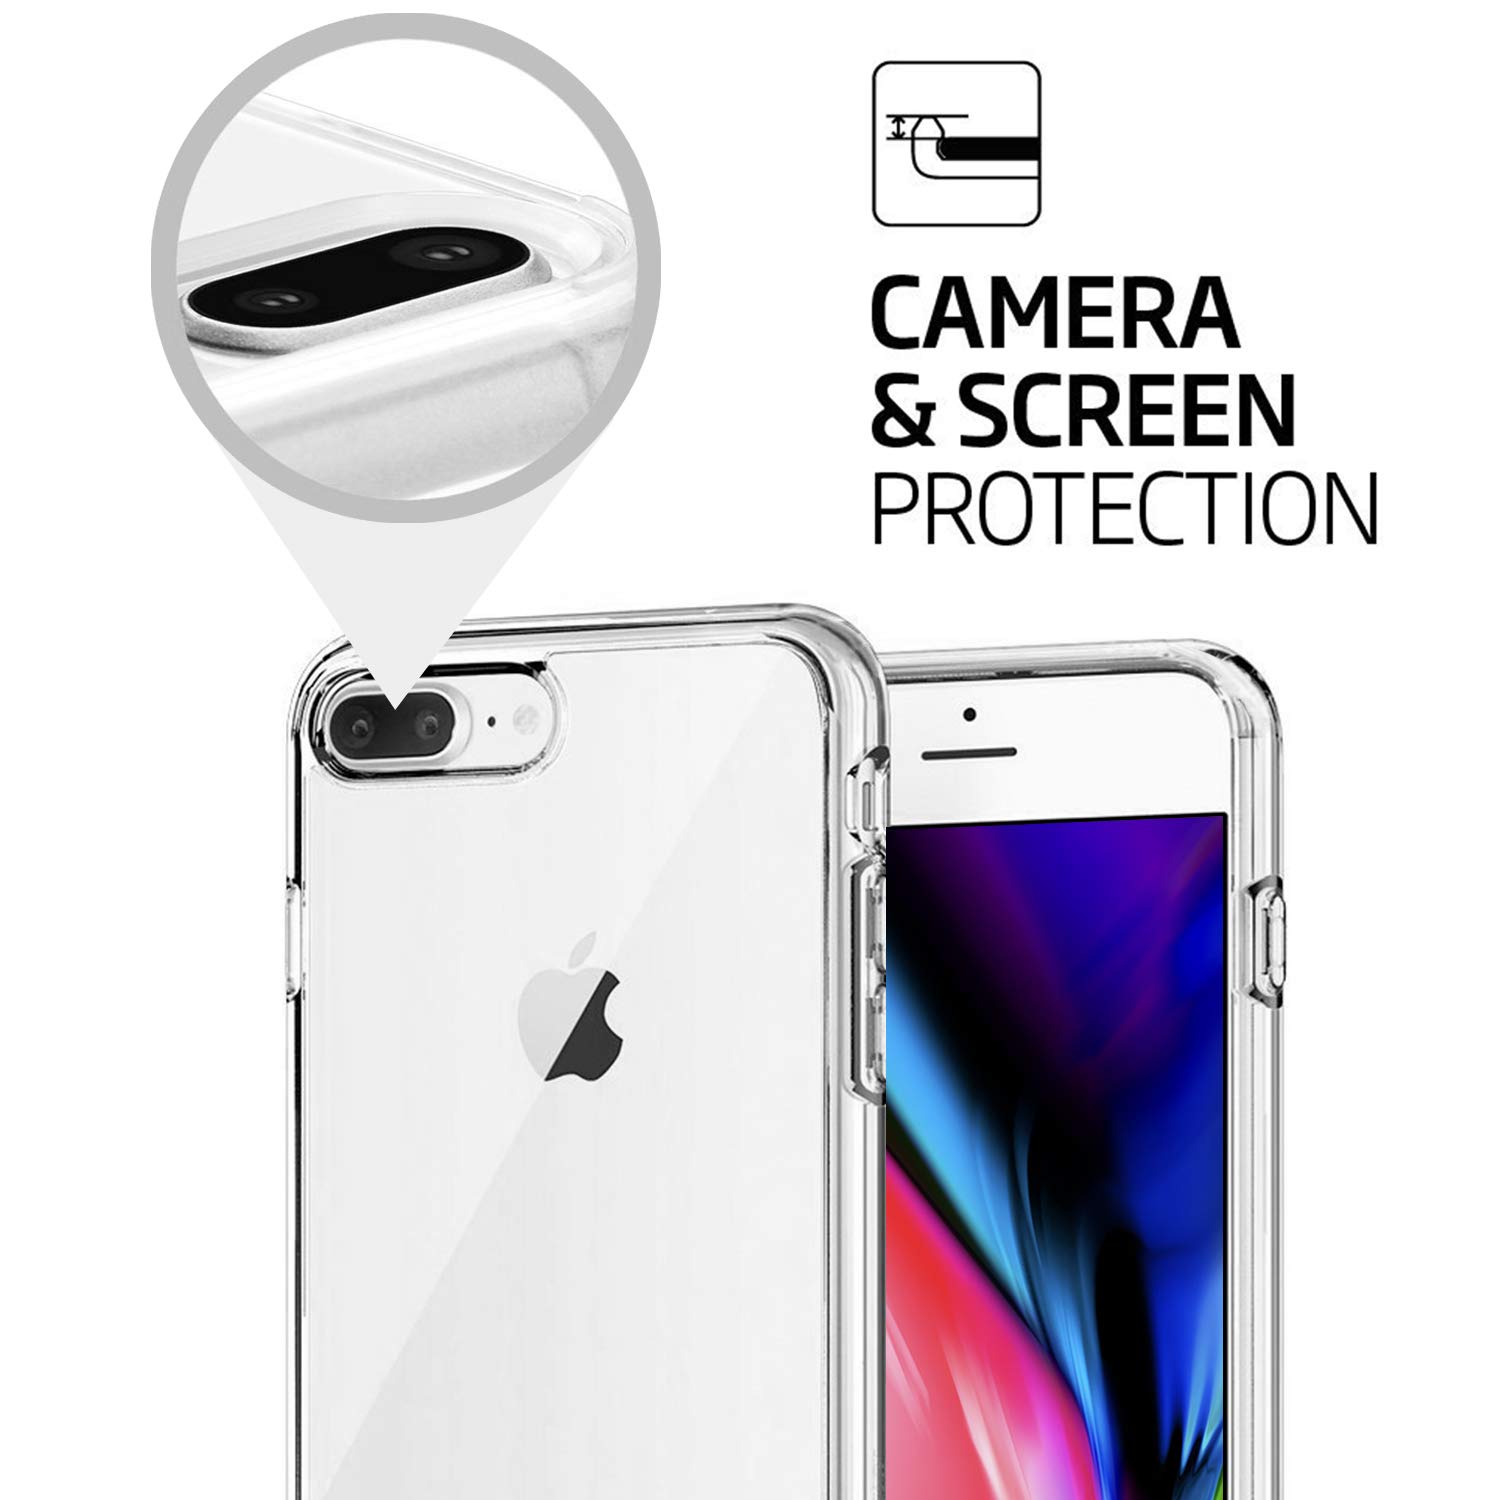 Ốp lưng silicon chống sốc cho iPhone 7 Plus / iPhone 8 Plus hiệu Likgus Crashproof (siêu mỏng, chống chịu mọi va đập, chống ố vàng) - Hàng nhập khẩu